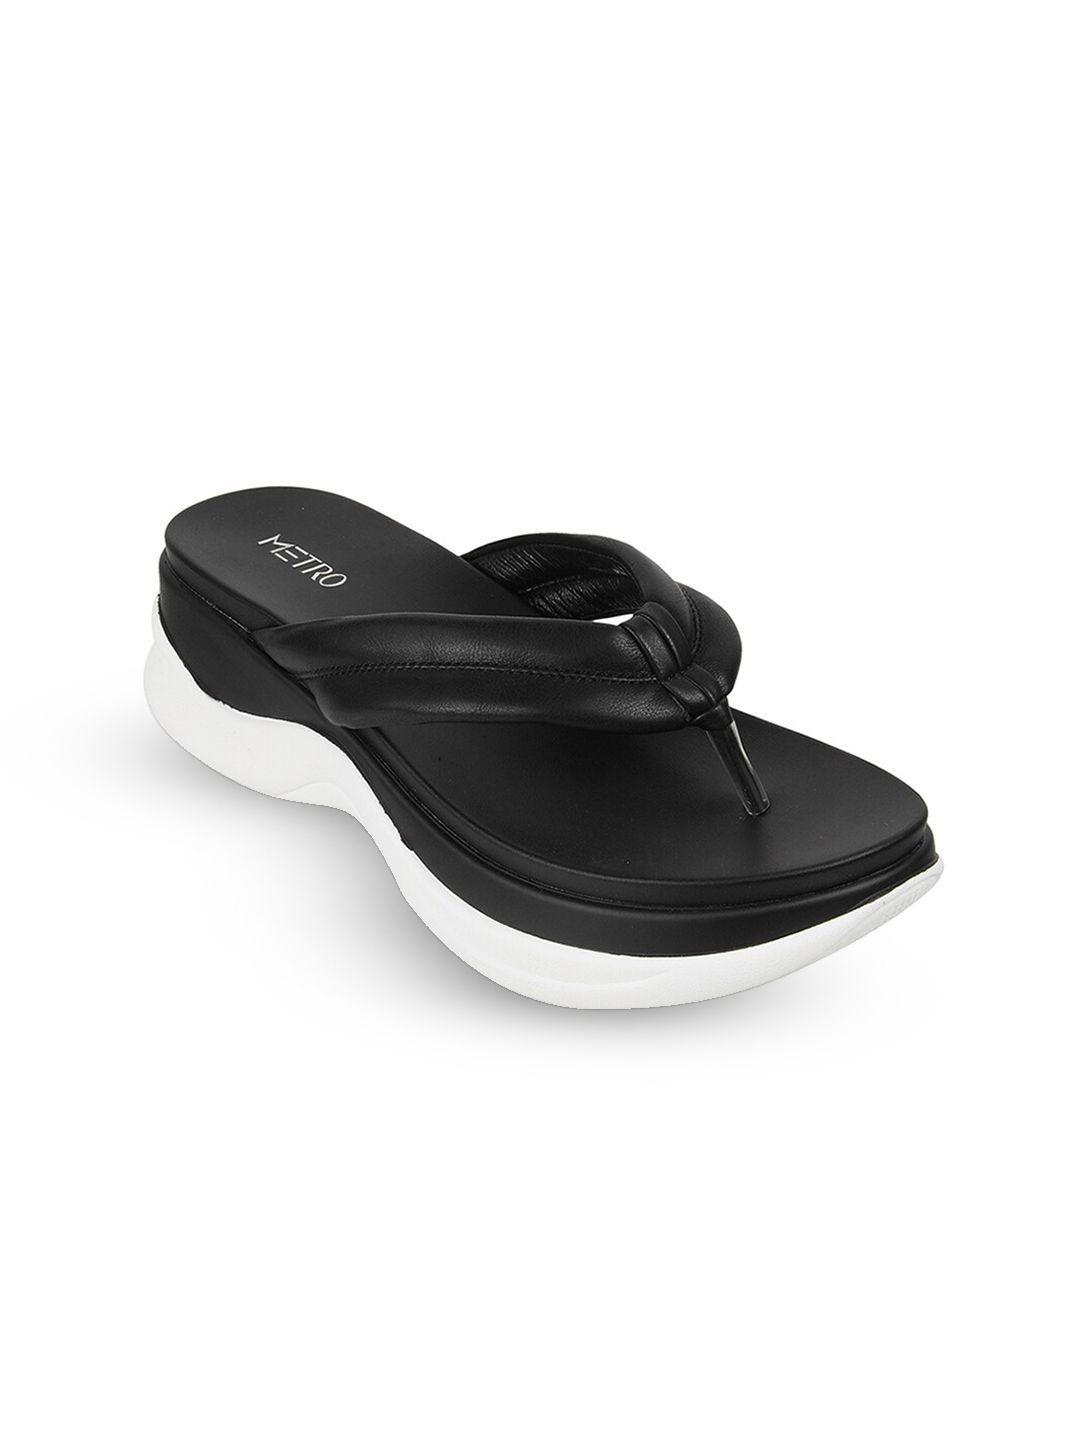 metro women slip-on comfort sandals